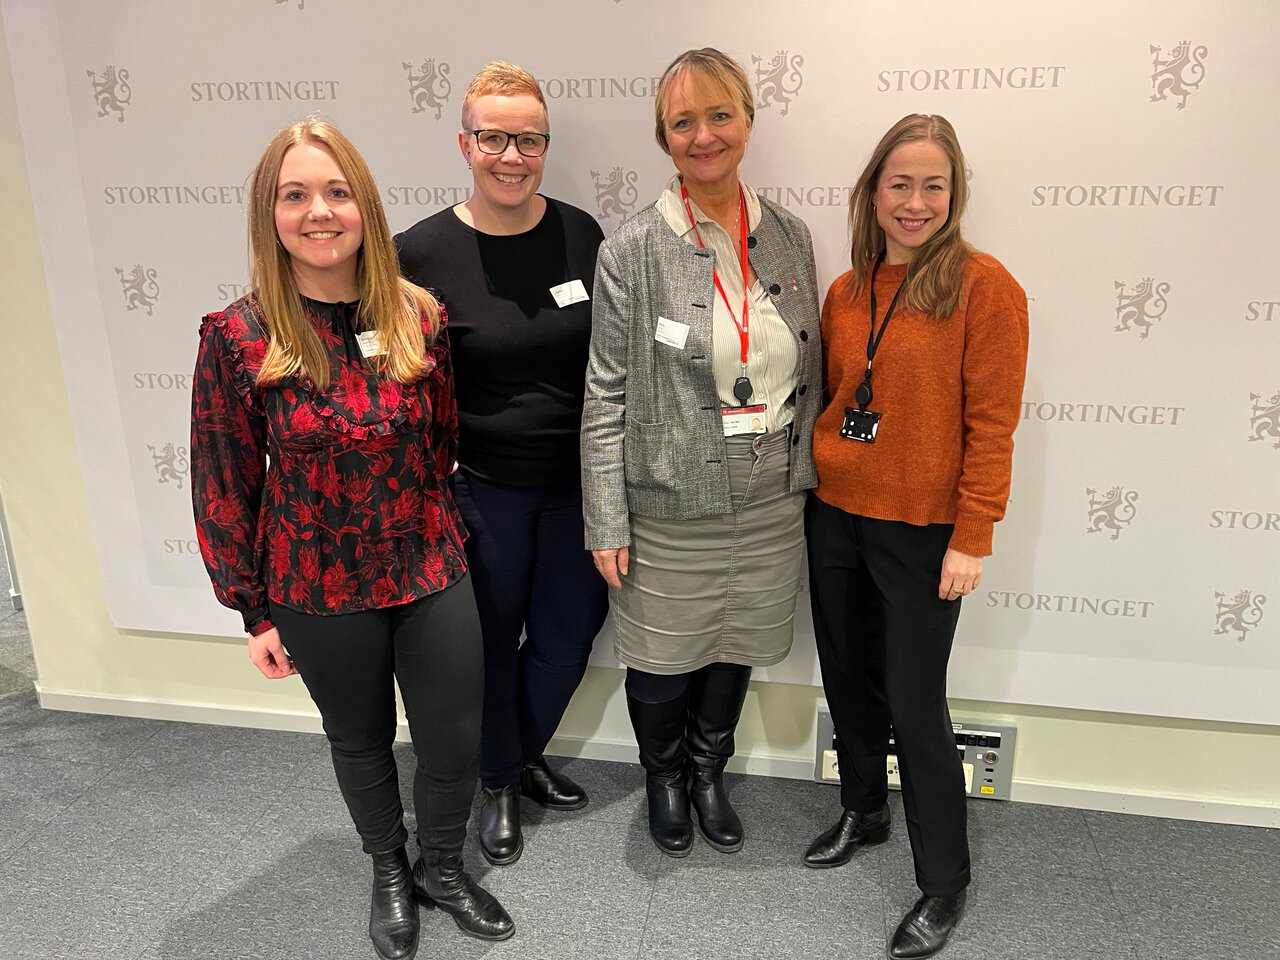 Fra venstre: Cecilie Haga, rådgiver, Marthe Myhr, rådgiver, Iren Luther, leder yrkesseksjon helse og sosial, Heidi Anderssen-Dukes, rådgiver